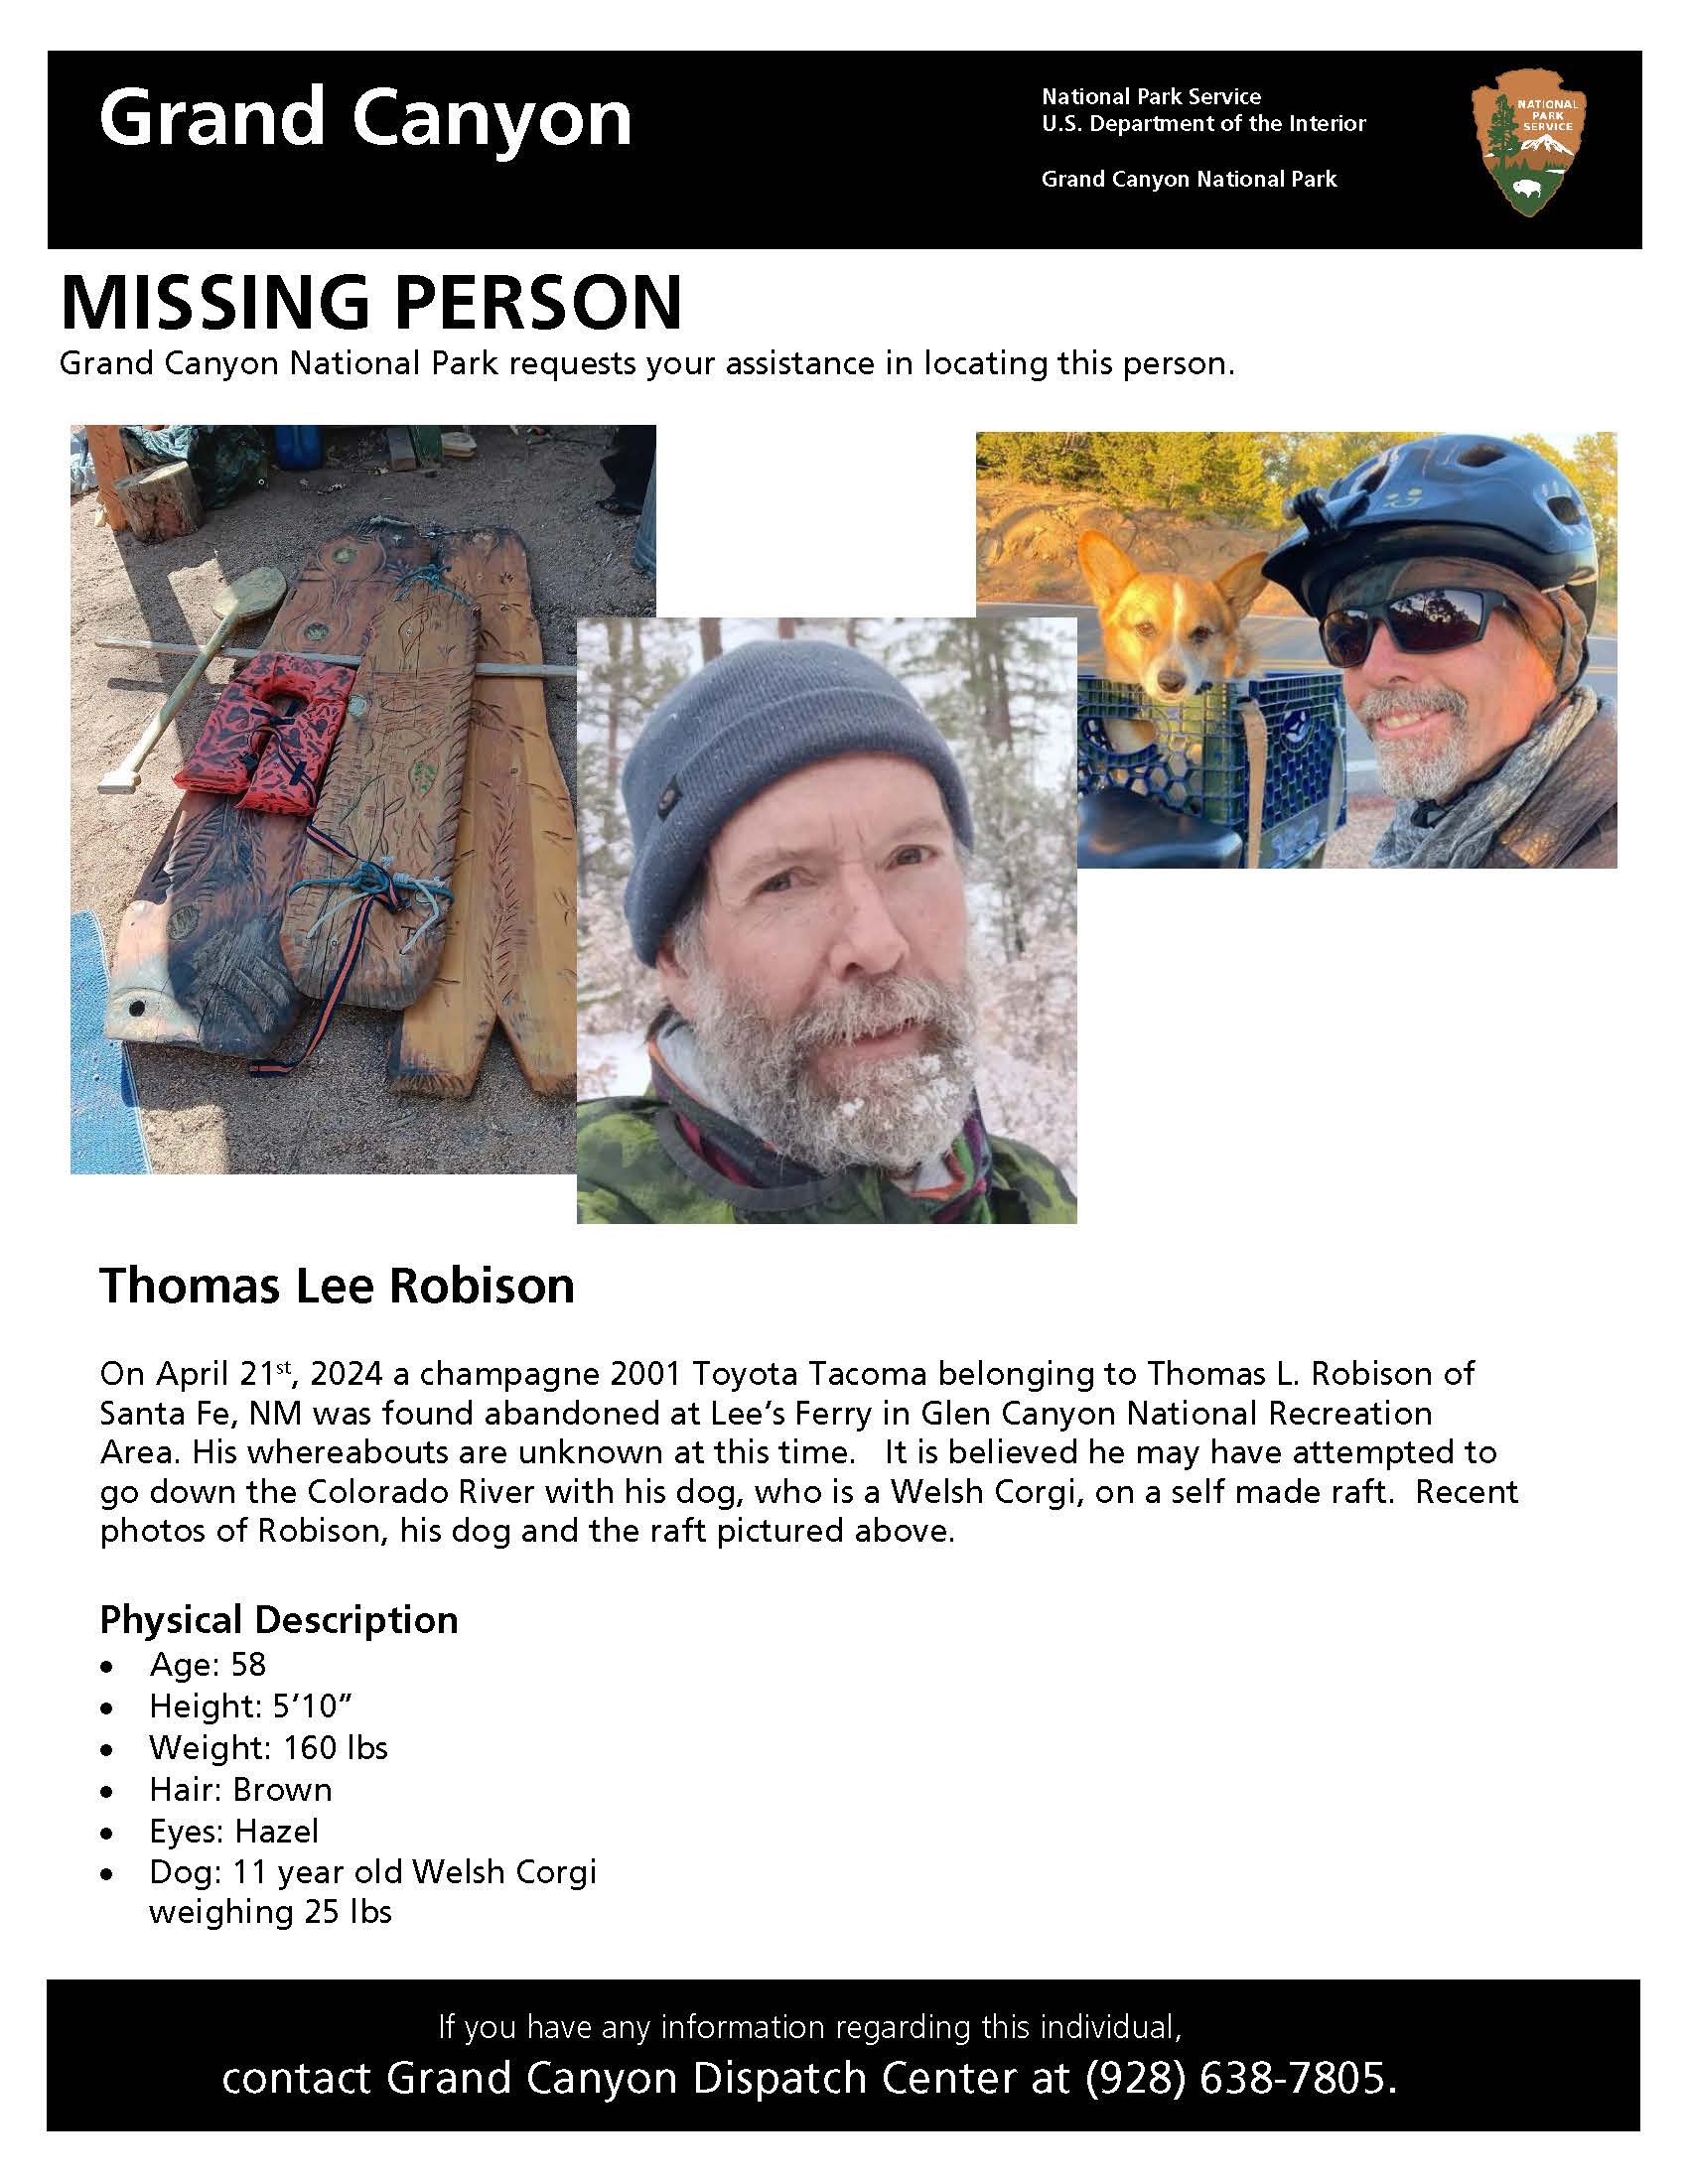 Missing Person flyer describing the physical description of Thomas Robison